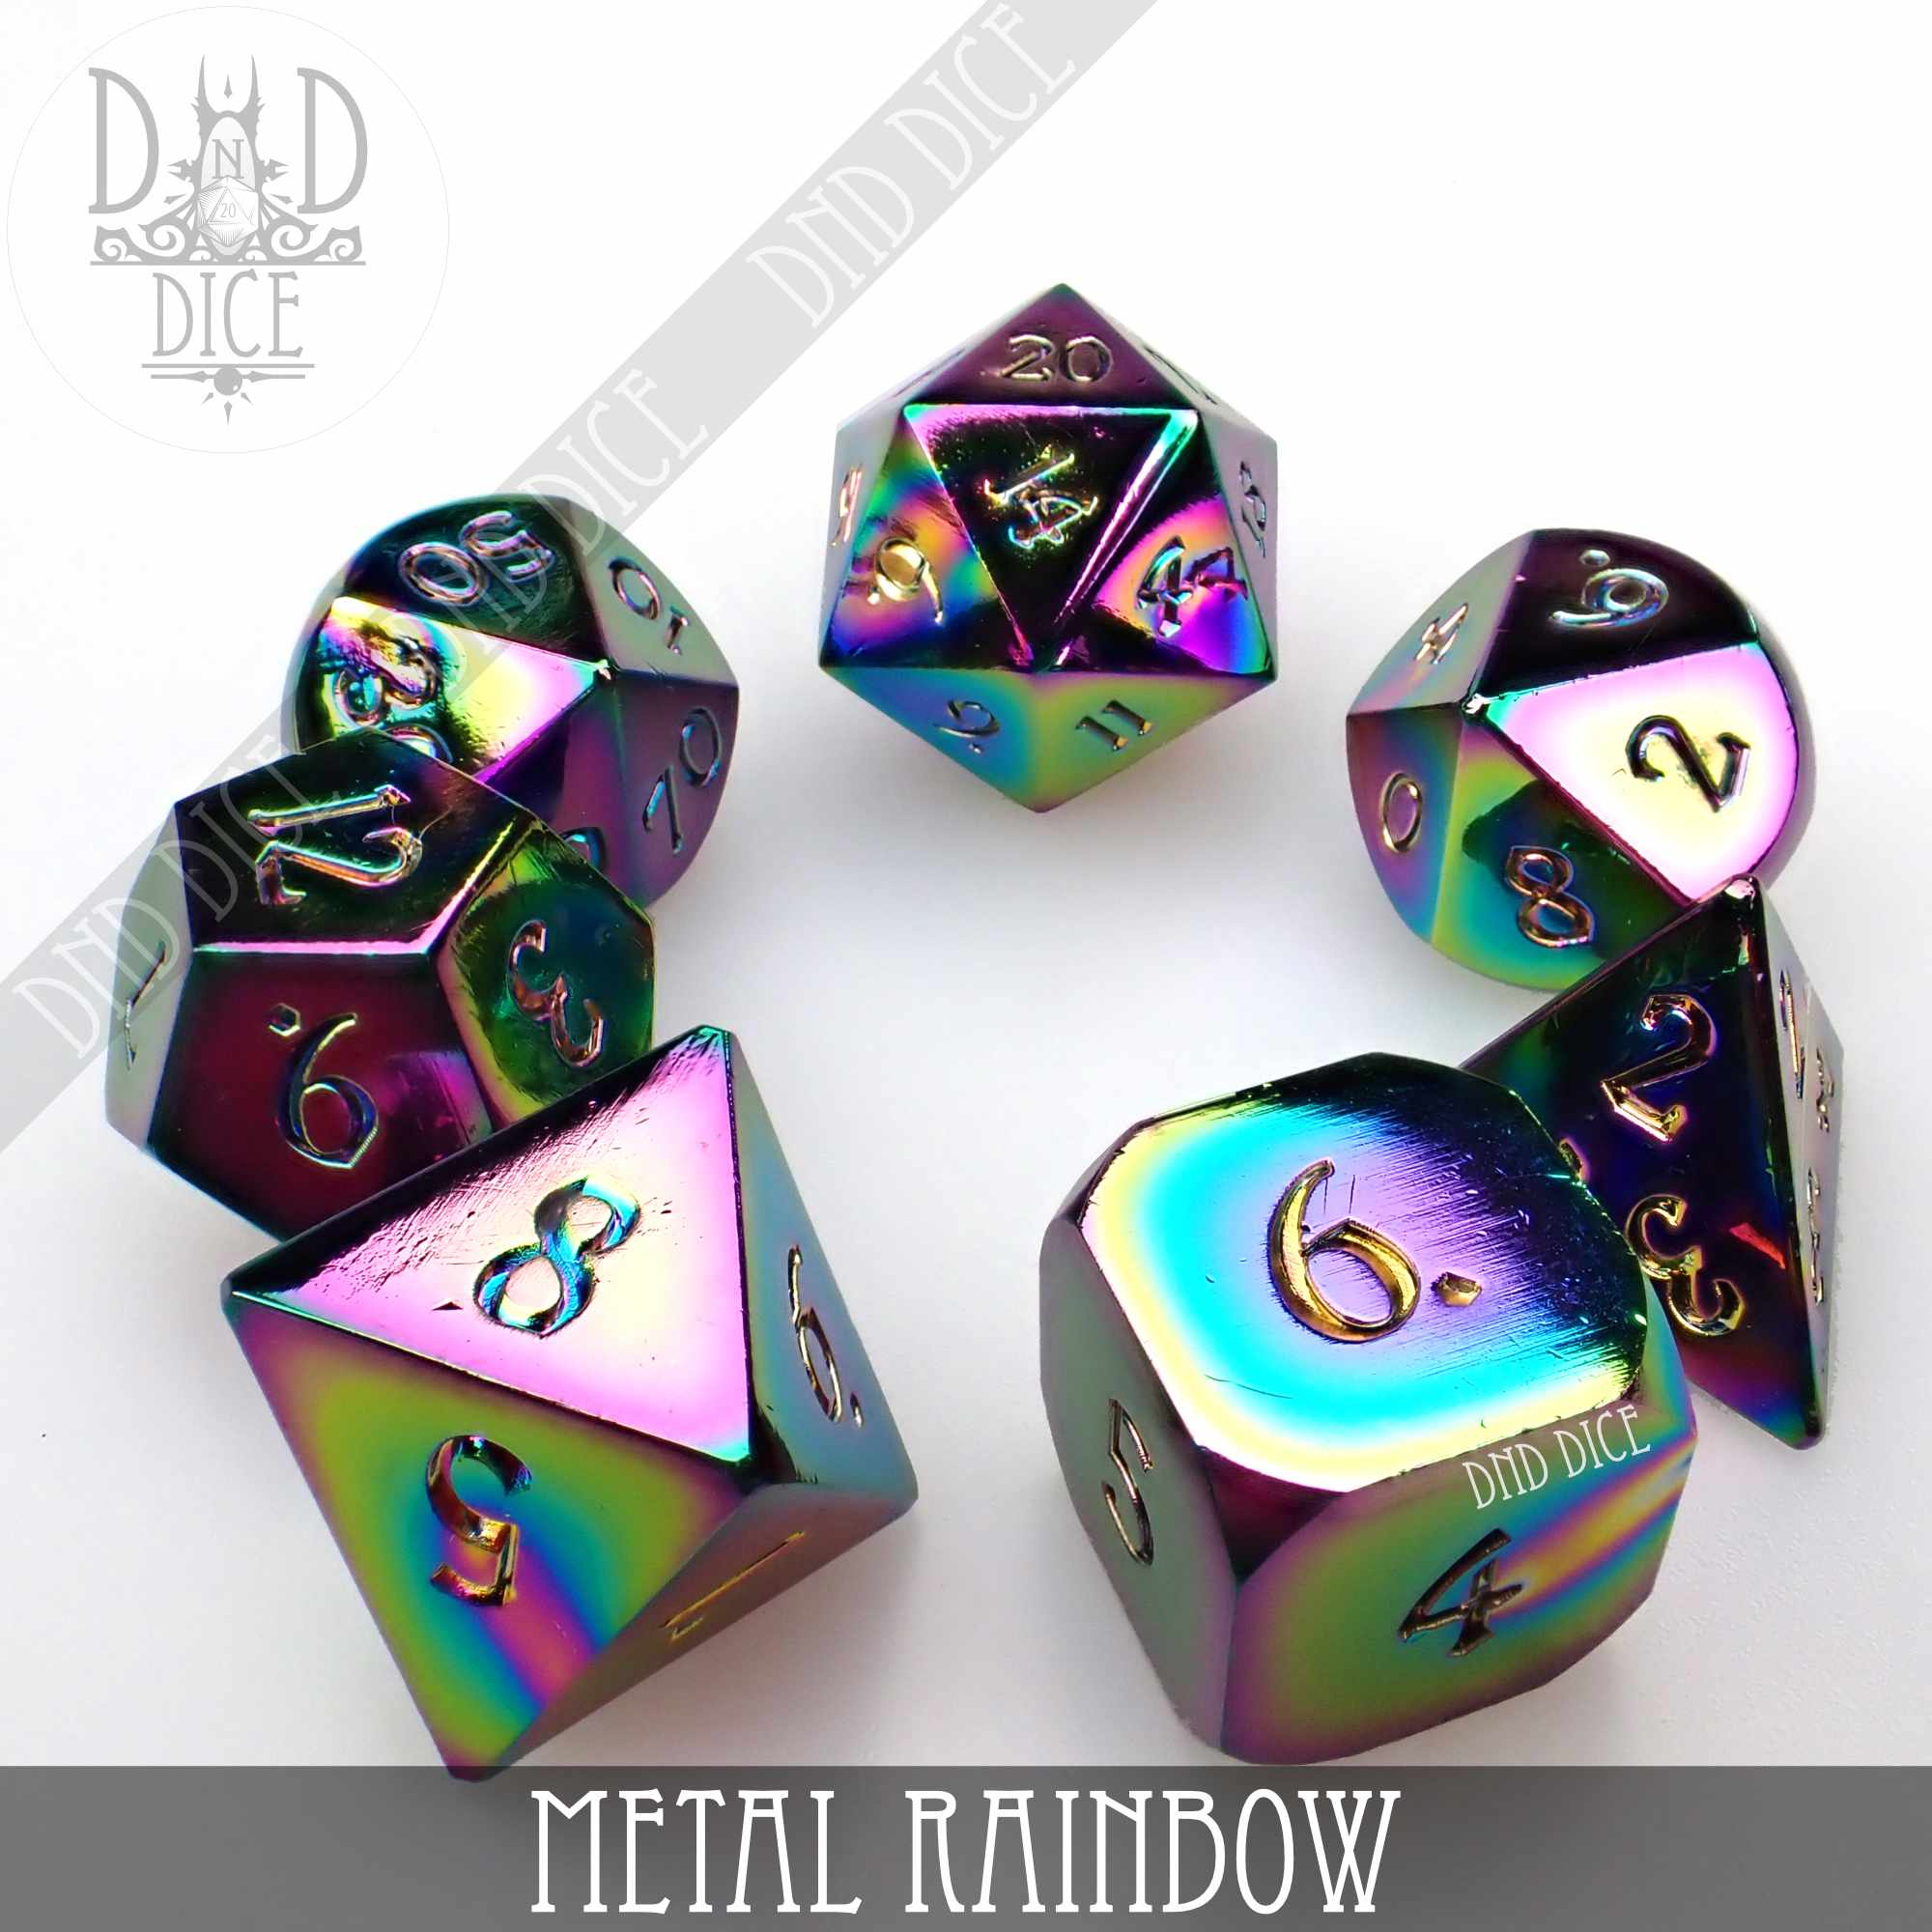 Metal Rainbow Dice Set